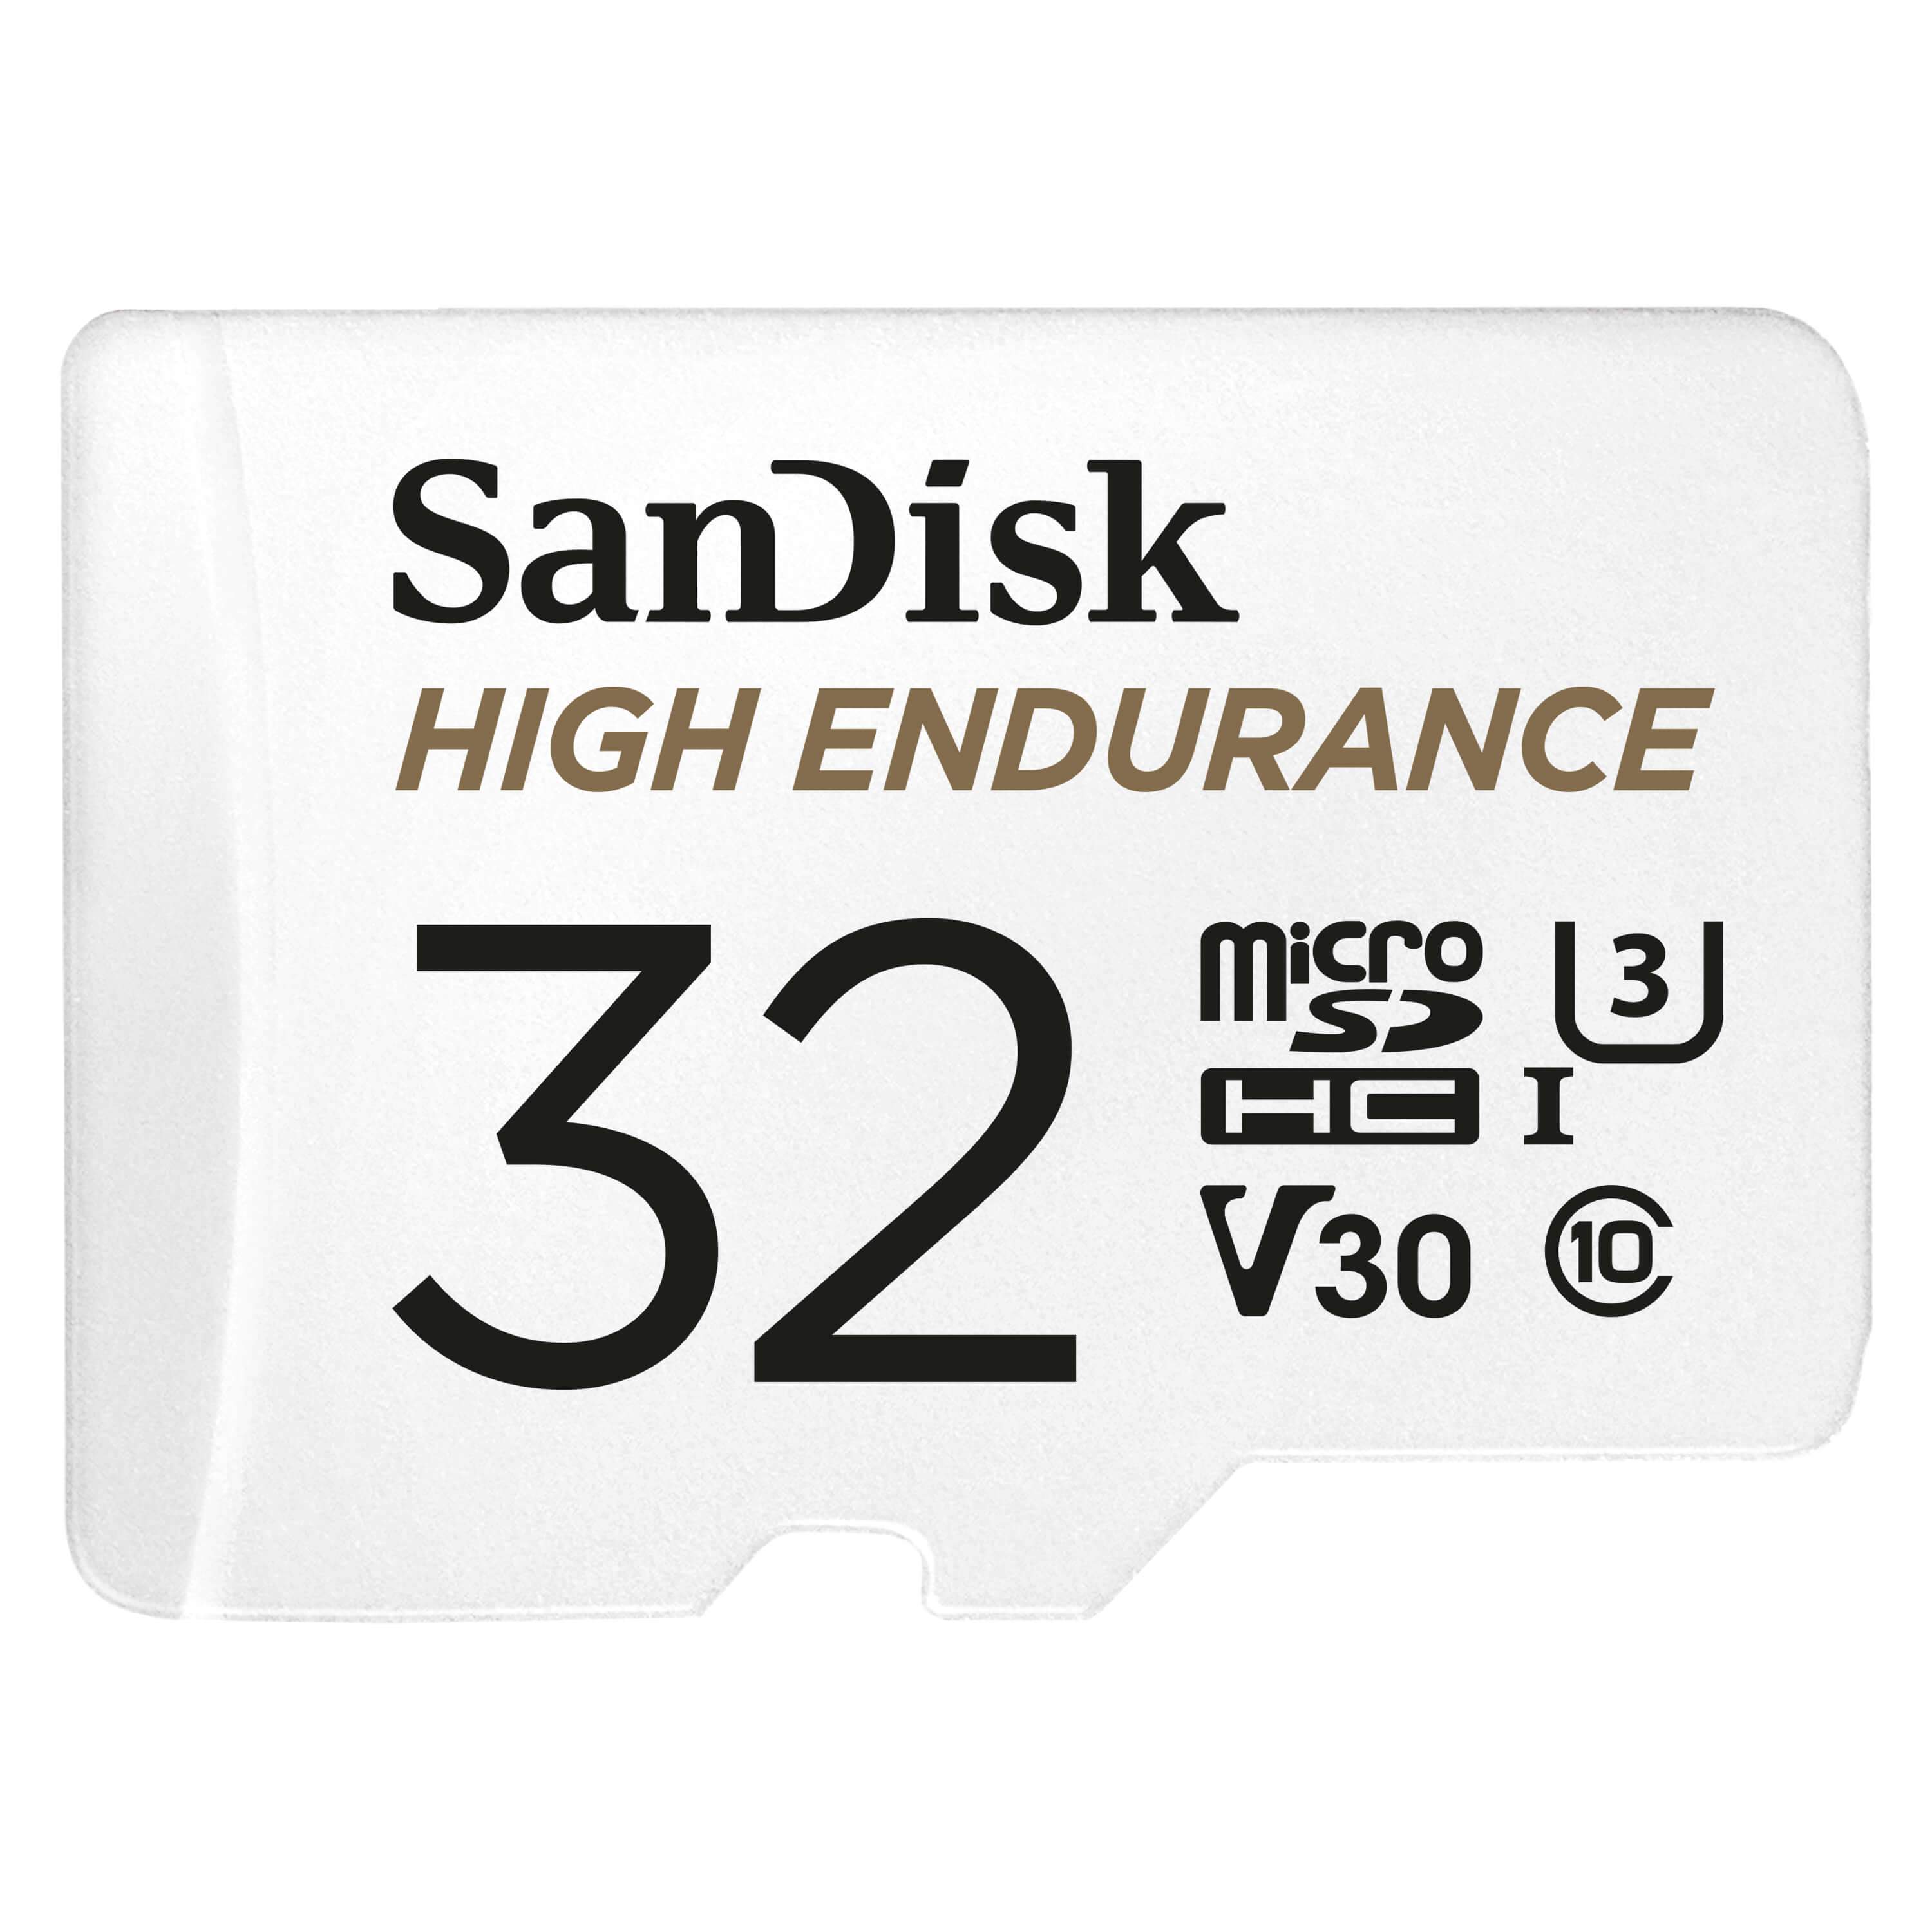 passagier Stratford on Avon Omgaan met Sandisk High Endurance Micro SD-kaart 32GB - VIOFO Benelux